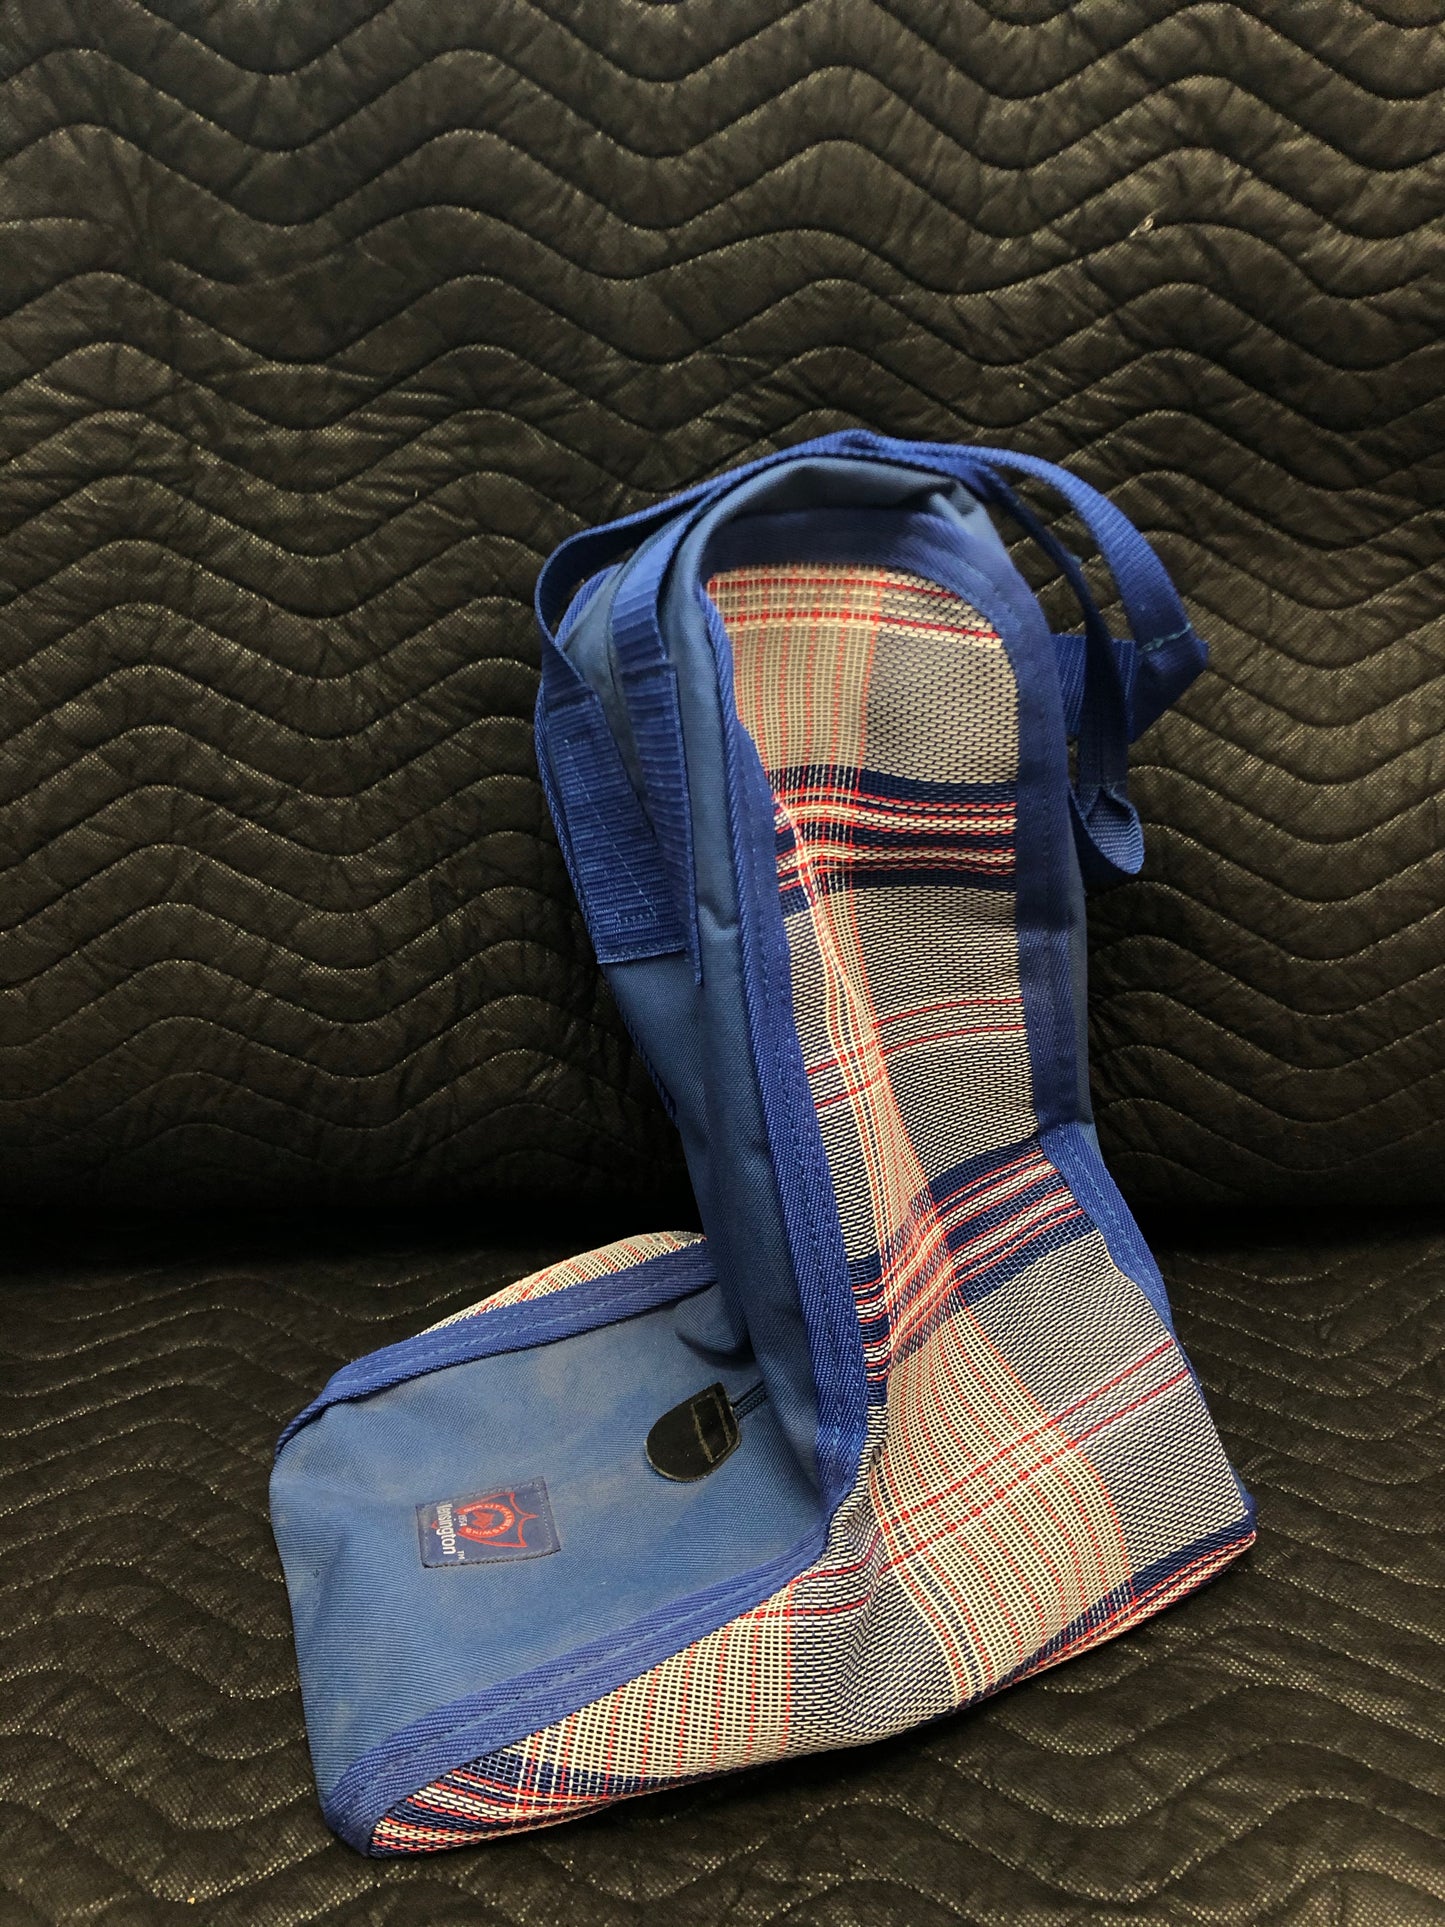 Kensington boot bag